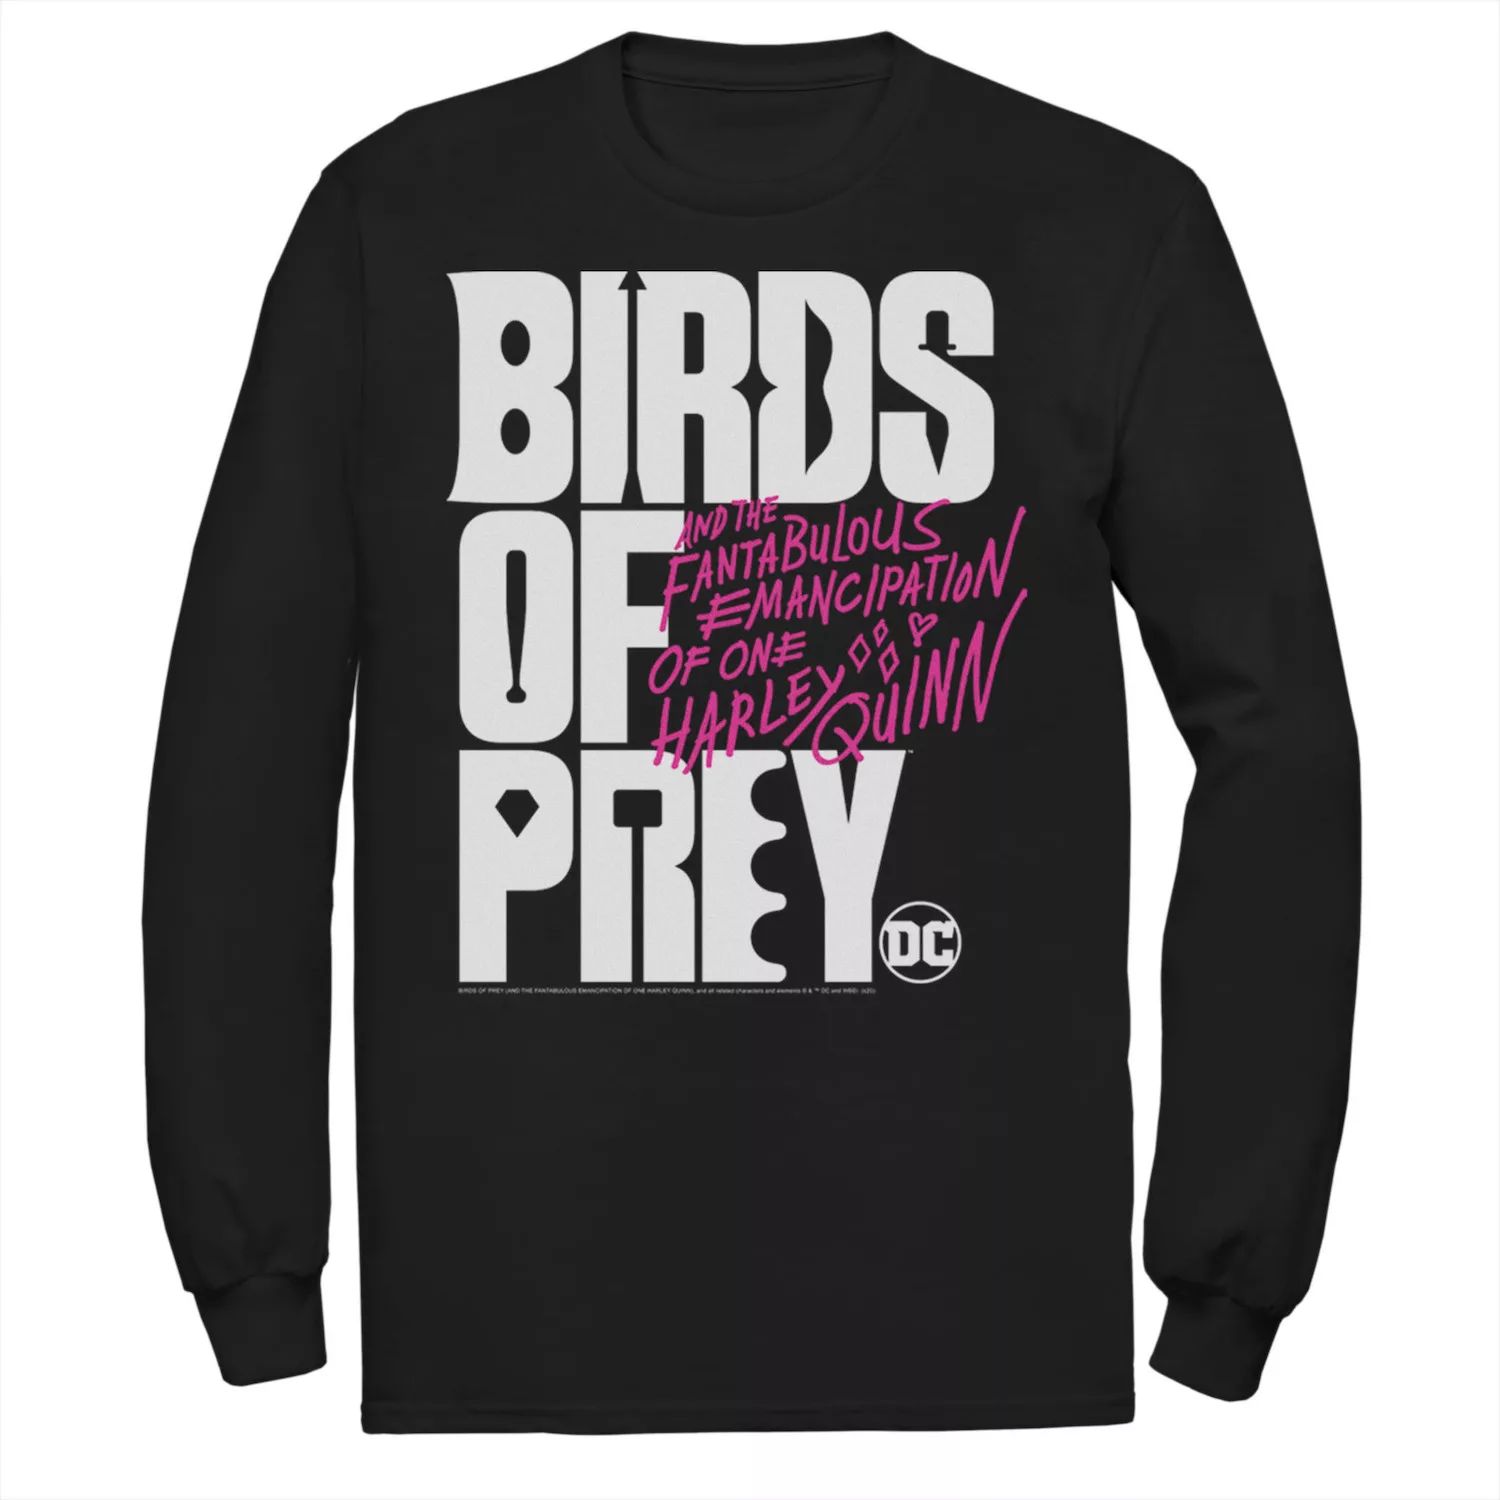 Мужская футболка с логотипом Birds Of Prey DC Comics мужская майка с логотипом dc comics birds of prey word stack